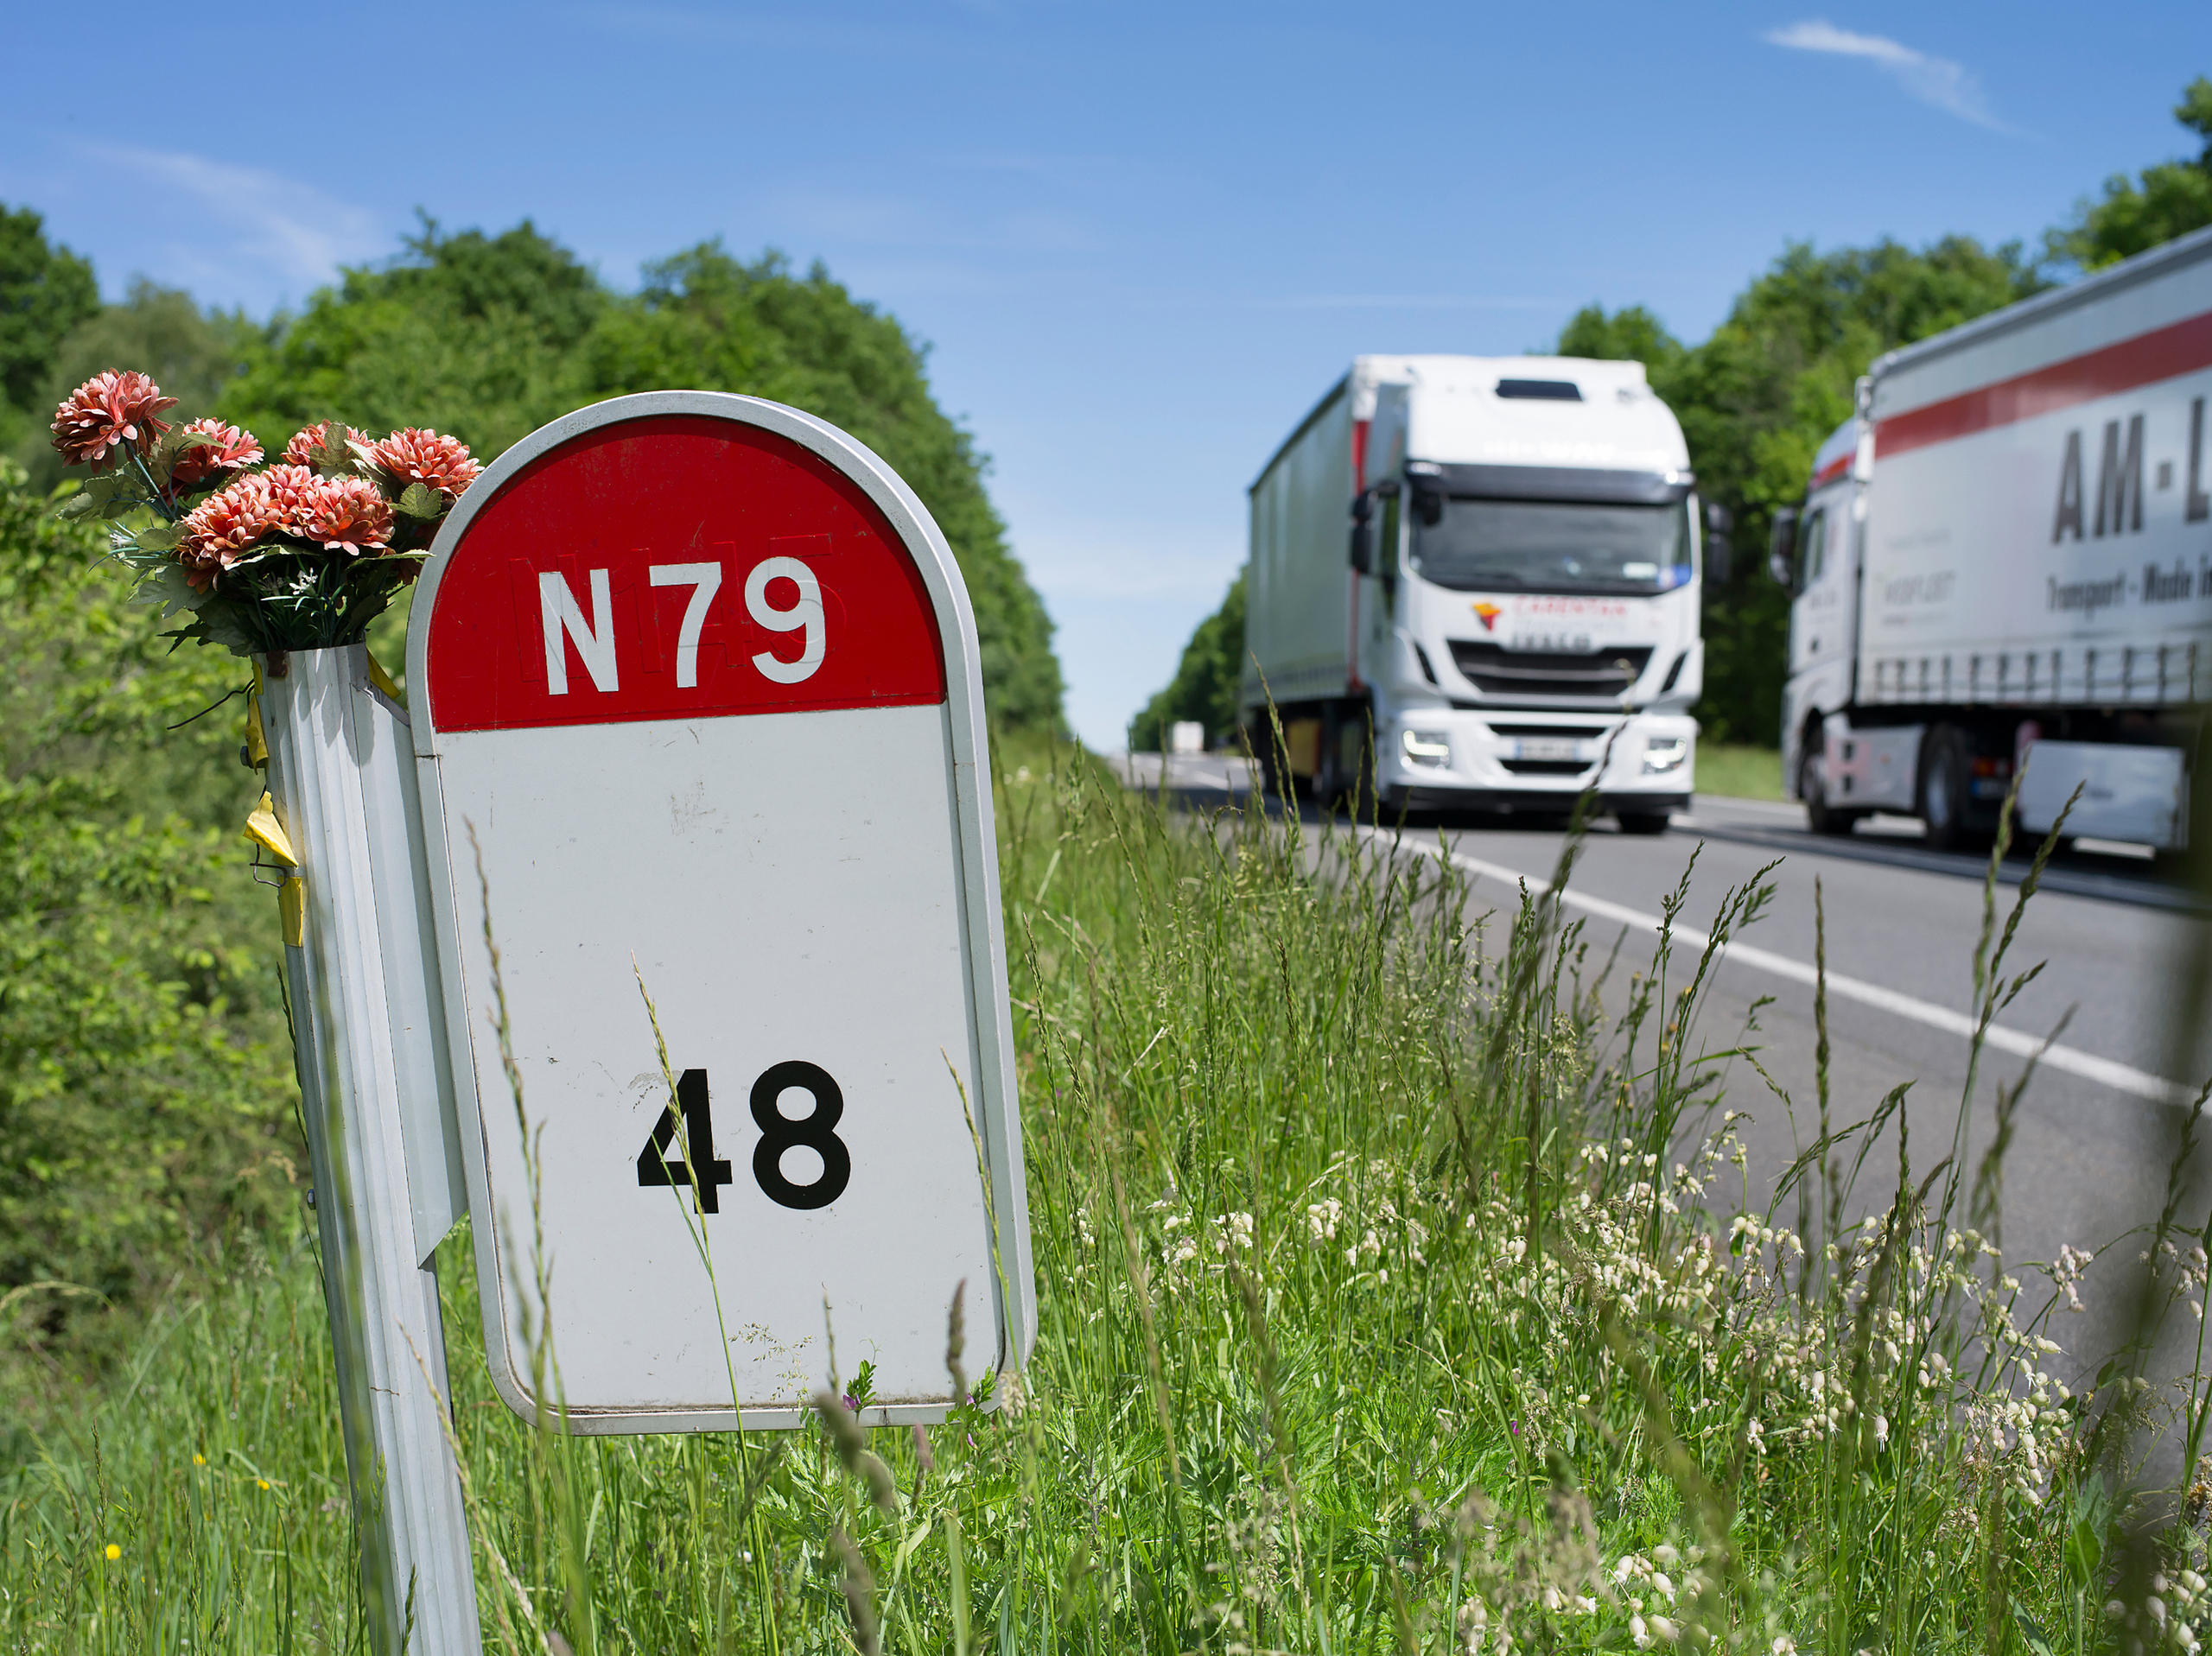 Señalización del kilómetro 48 en la carretera nacional 79 en Francia